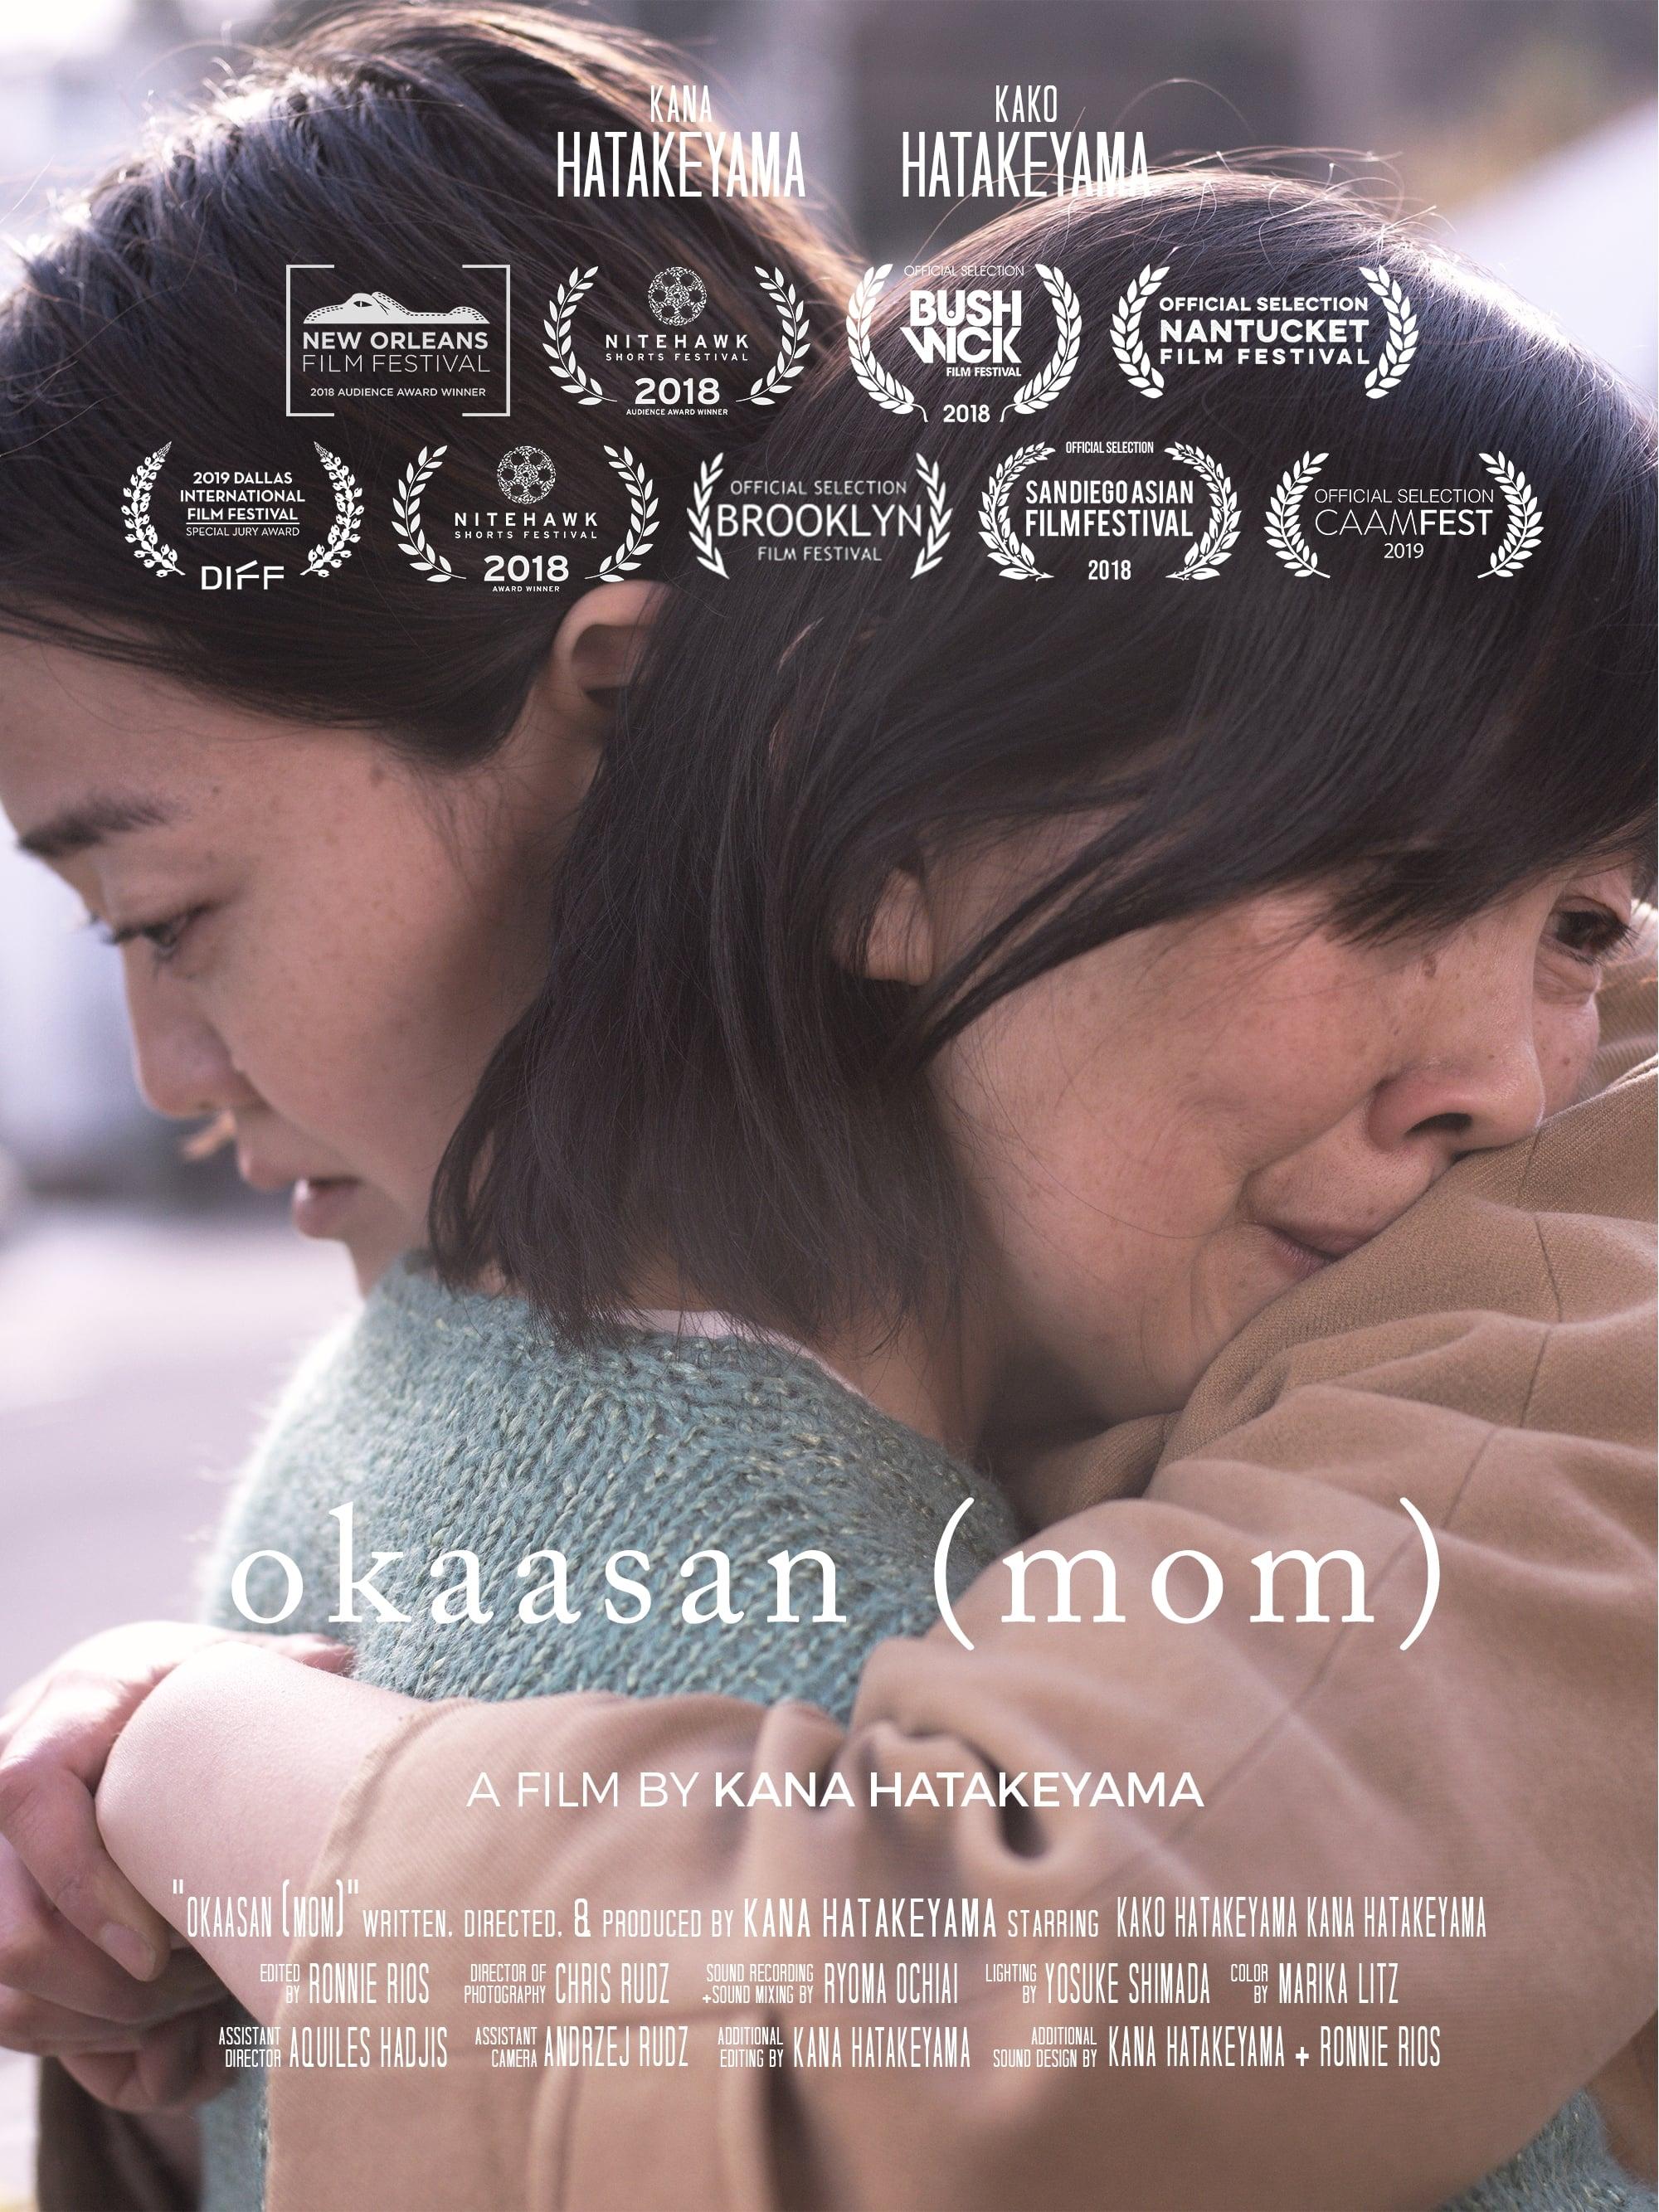 okaasan (mom) poster